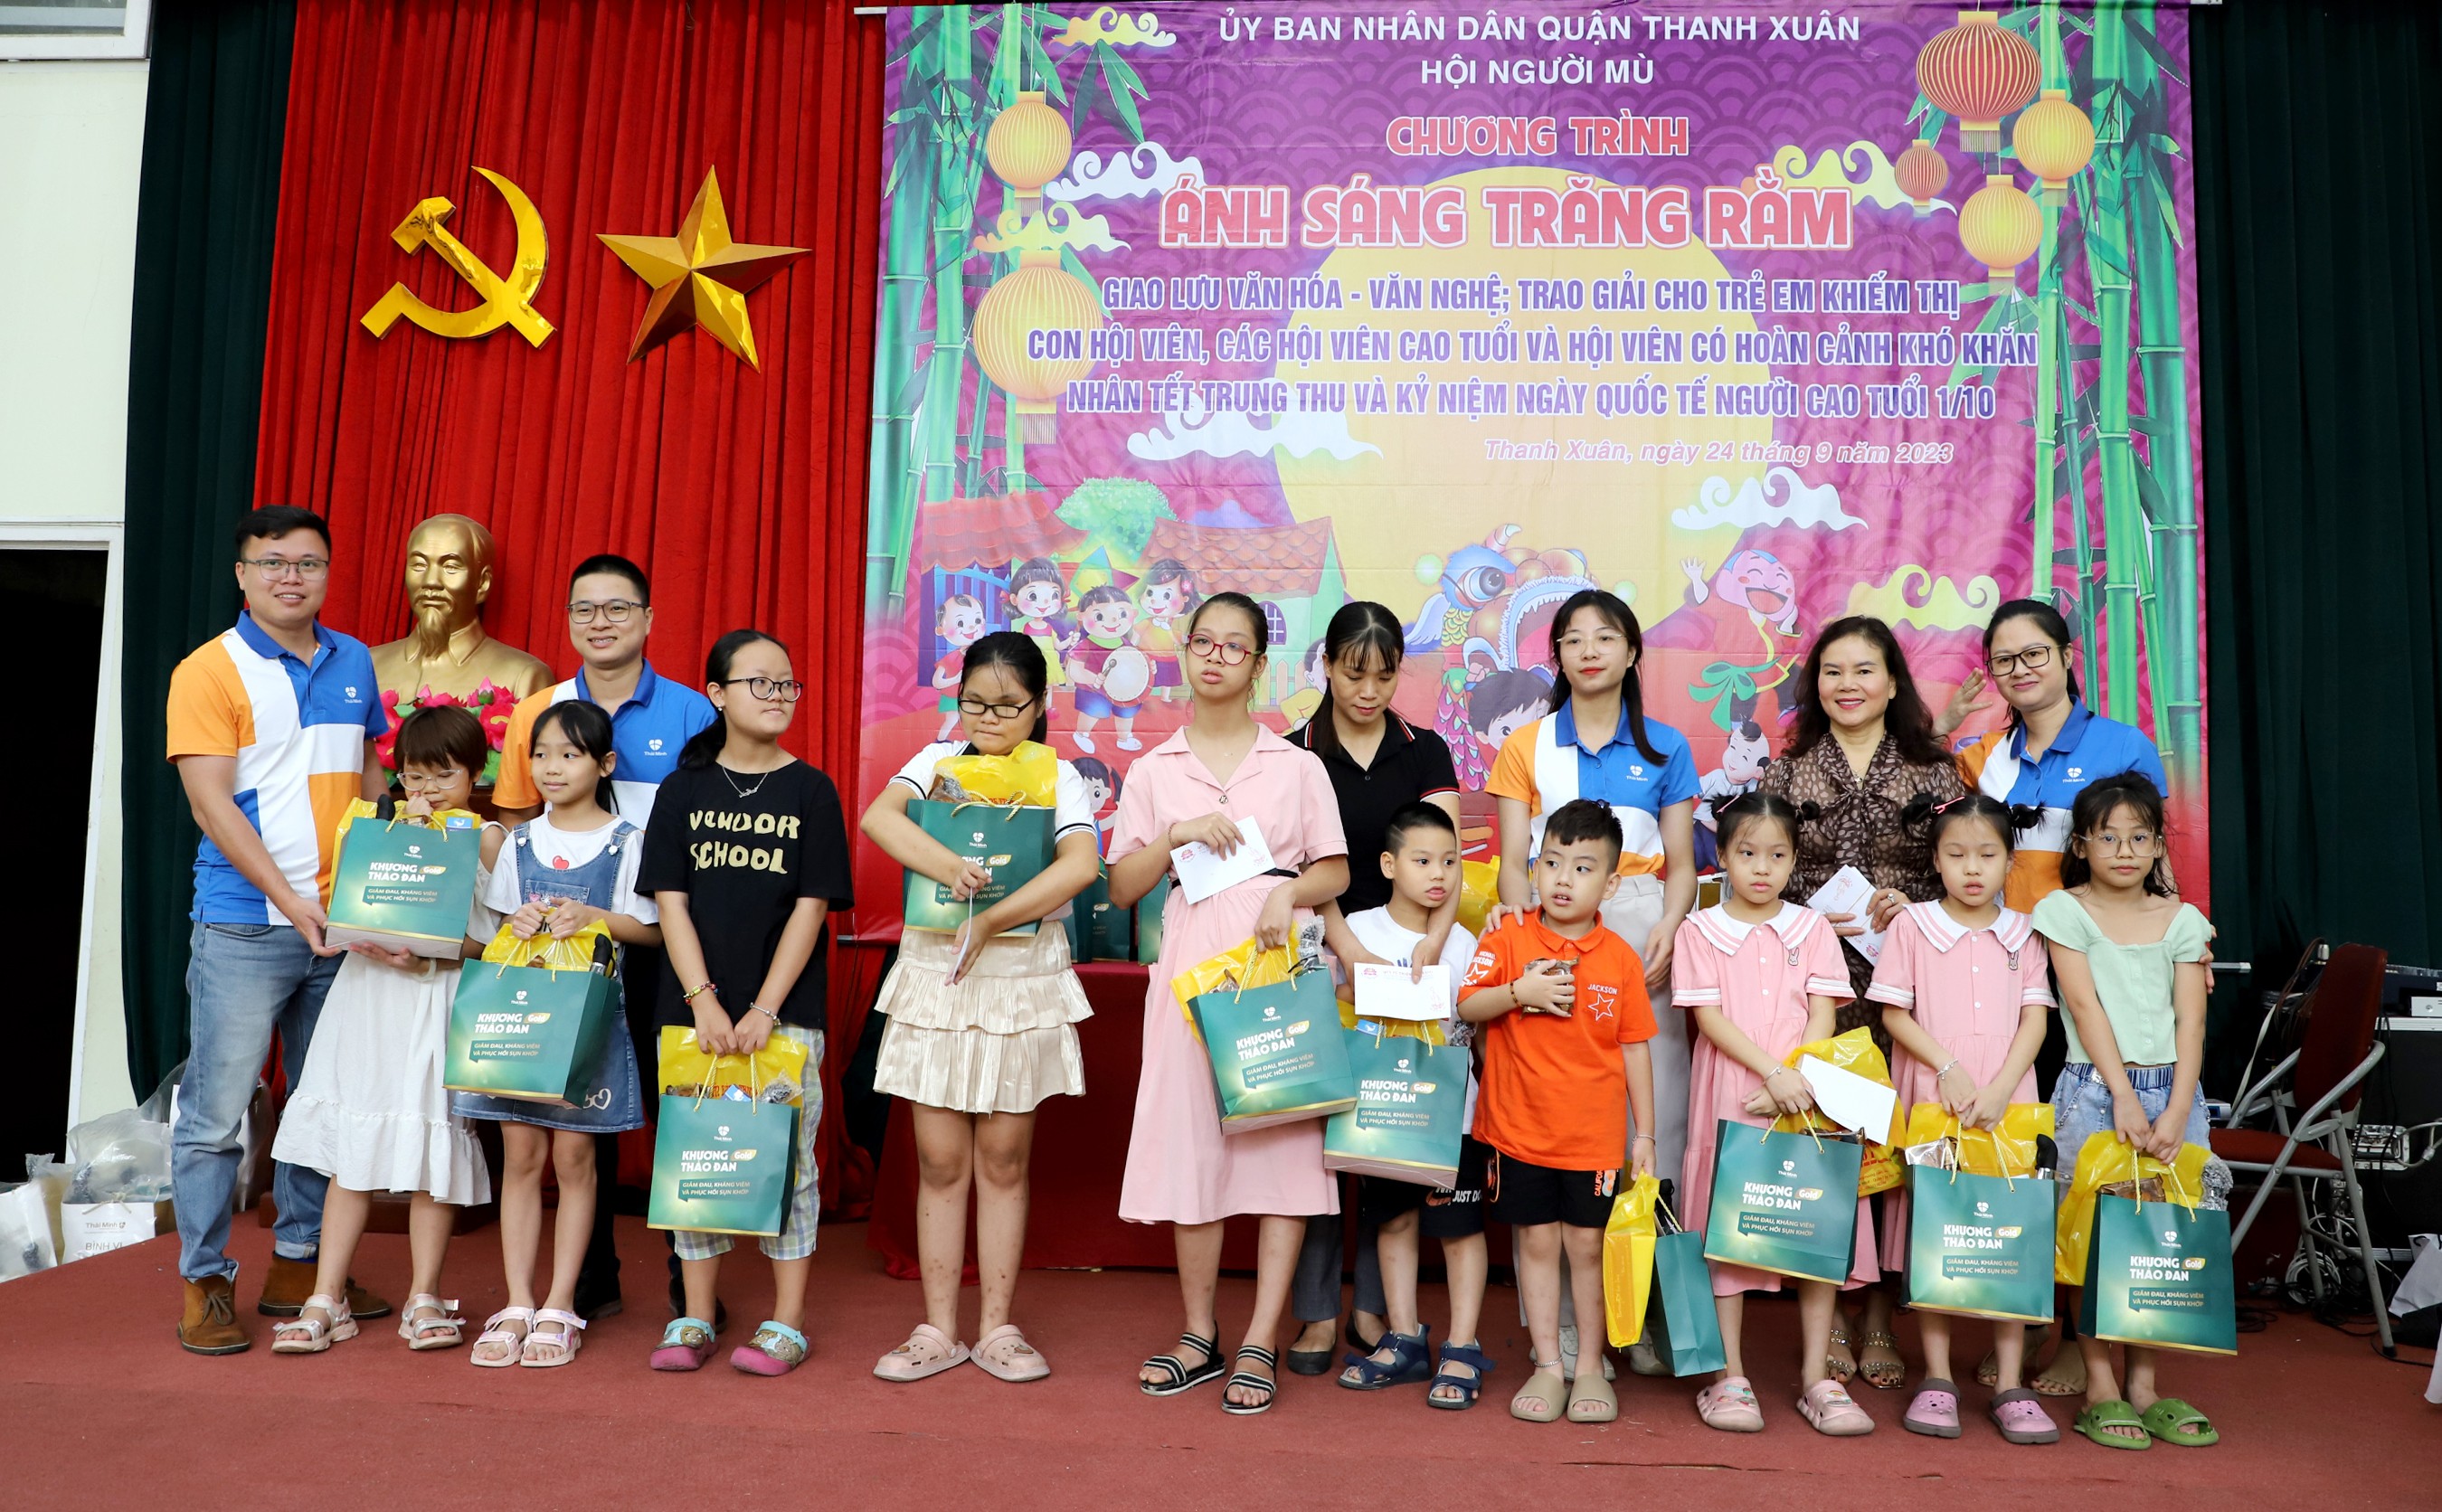 Trẻ em khiếm thị, con hội viên Hội người mù quận Thanh Xuân nhận quà nhân dịp Tết Trung thu.